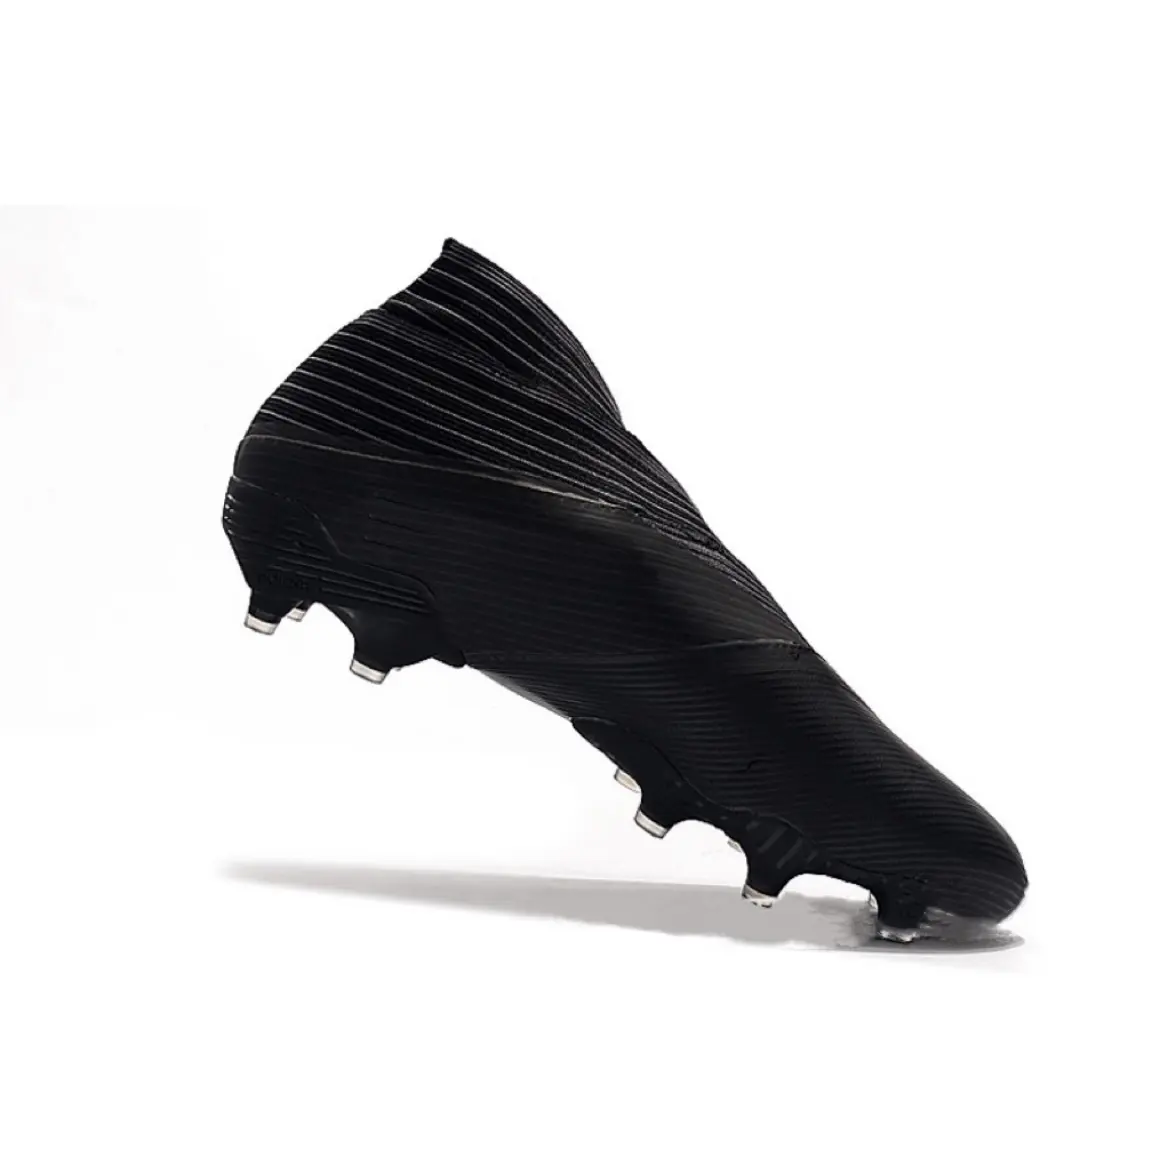 पेशेवर फुटबॉल जूते मूल शैली उच्च गुणवत्ता वाले एफजी अनुकूलन क्लीट्स